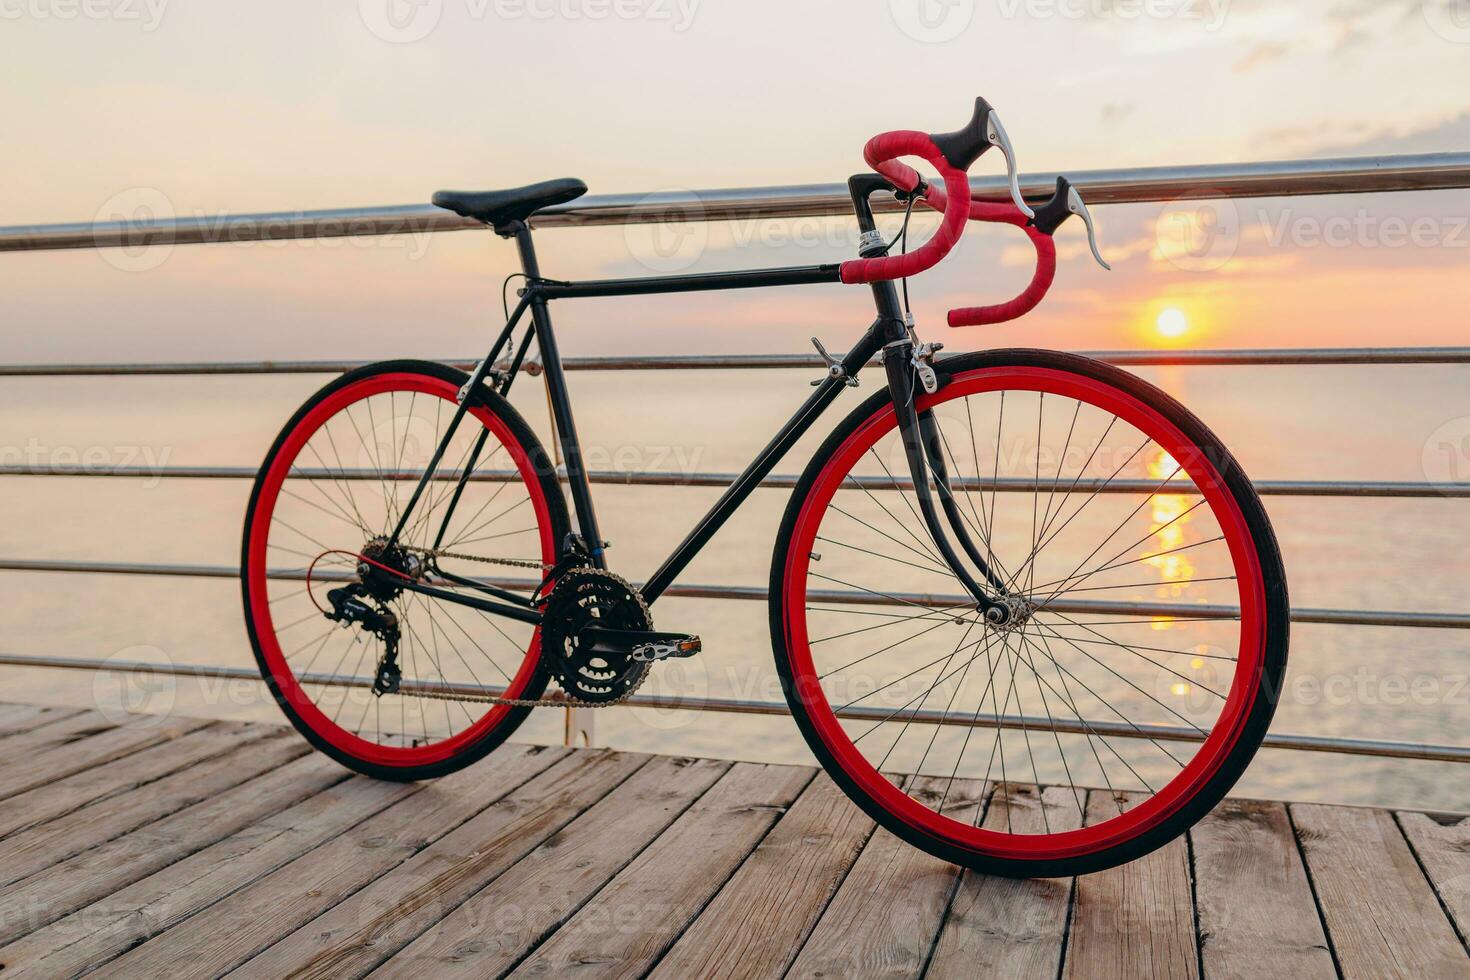 hipster fiets Bij zonsondergang zee foto